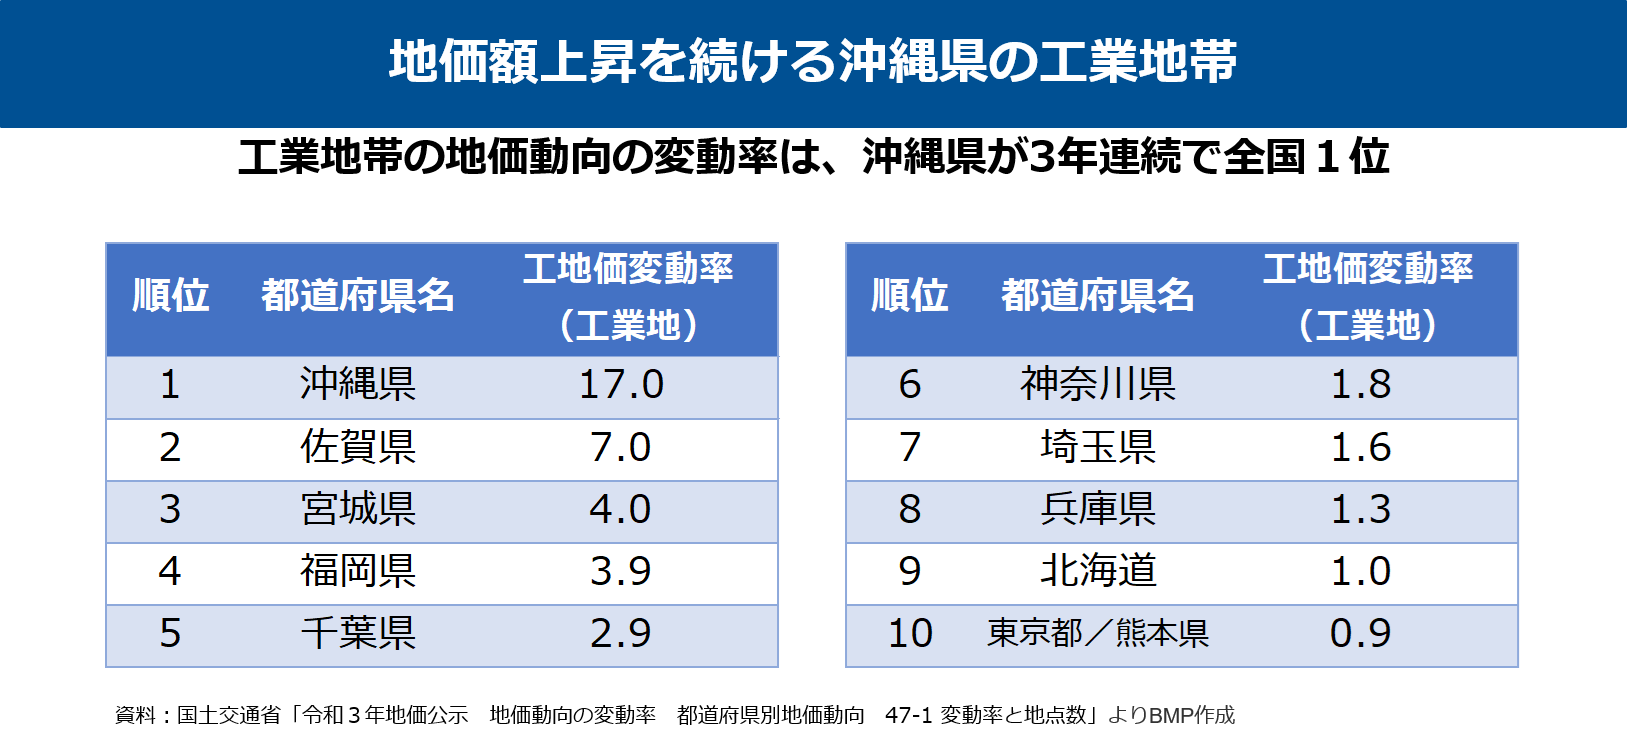 沖縄の工業地の地価上昇率, 沖縄の地価変動率, 沖縄の物流・ロジスティクス